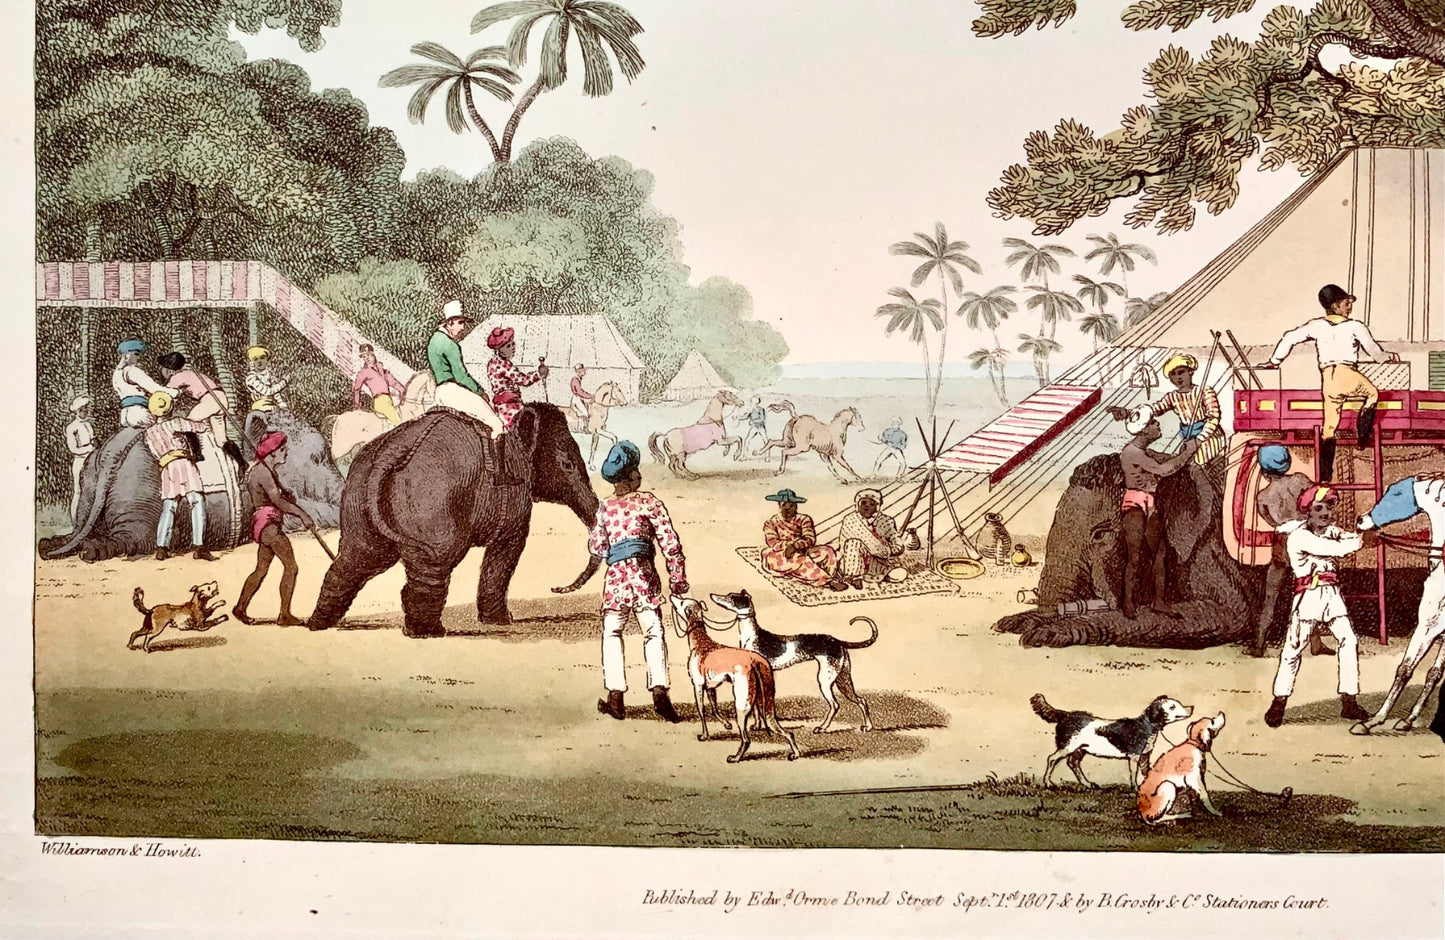 1807 ème. Williamson, Préparations pour une chasse, aquatinte coloriée à la main, sports, Inde, topographie étrangère